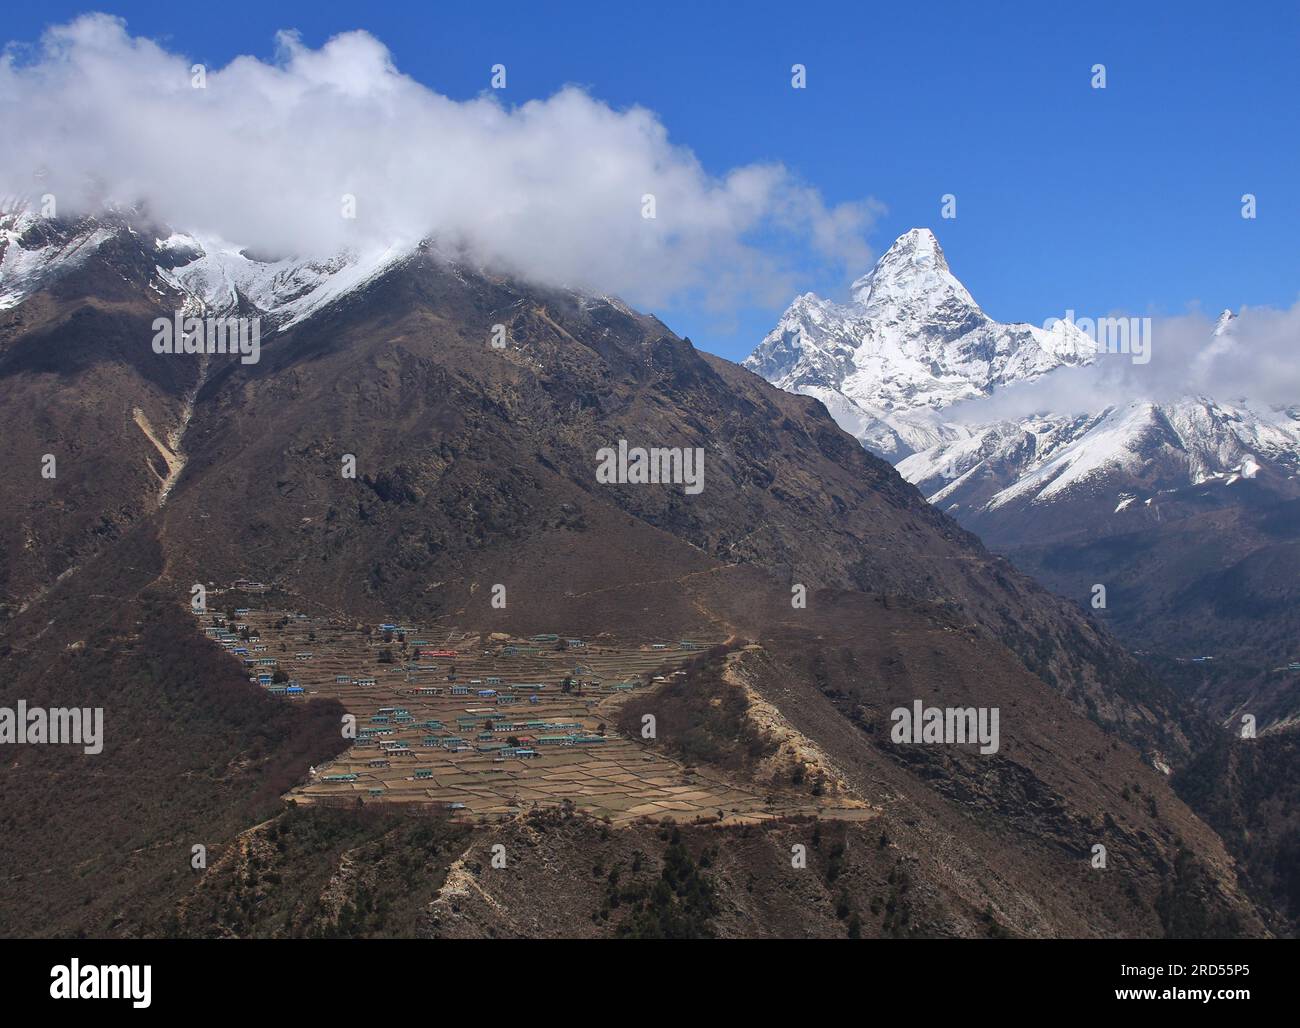 Sherpa village Phortse. Peak of Ama Dablam. Spring scene on the way to Everest base camp, Nepal Stock Photo